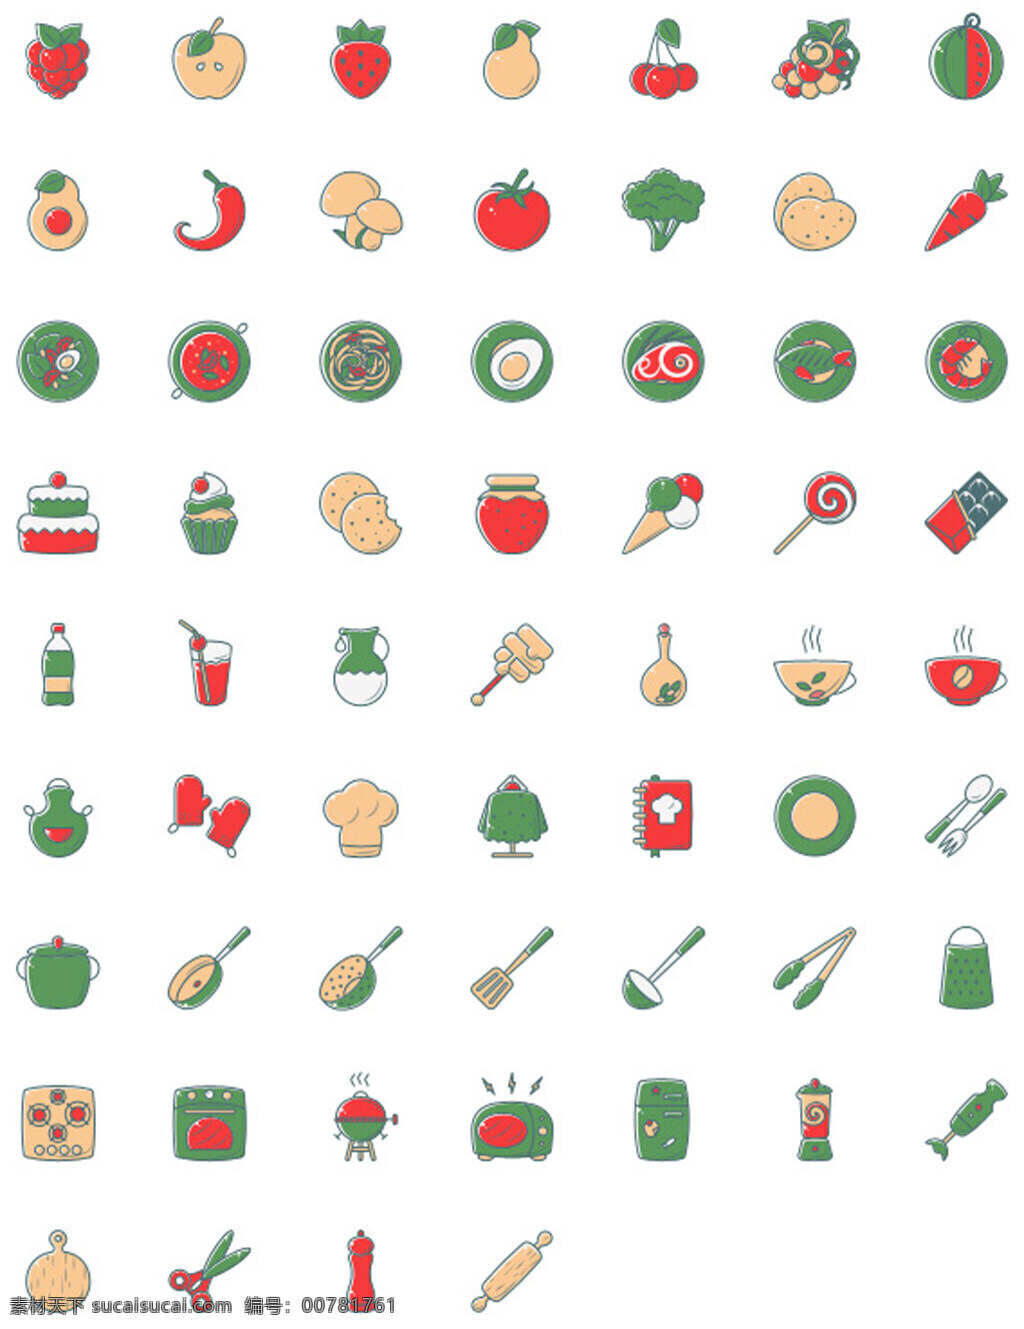 圣诞 颜色 彩色 厨房 相关 图标 草莓 蛋糕 辣椒 樱桃 牛油果 棒棒糖 冰激凌 音量 勺子 铲子 面包机 剪刀 糖果 夹子